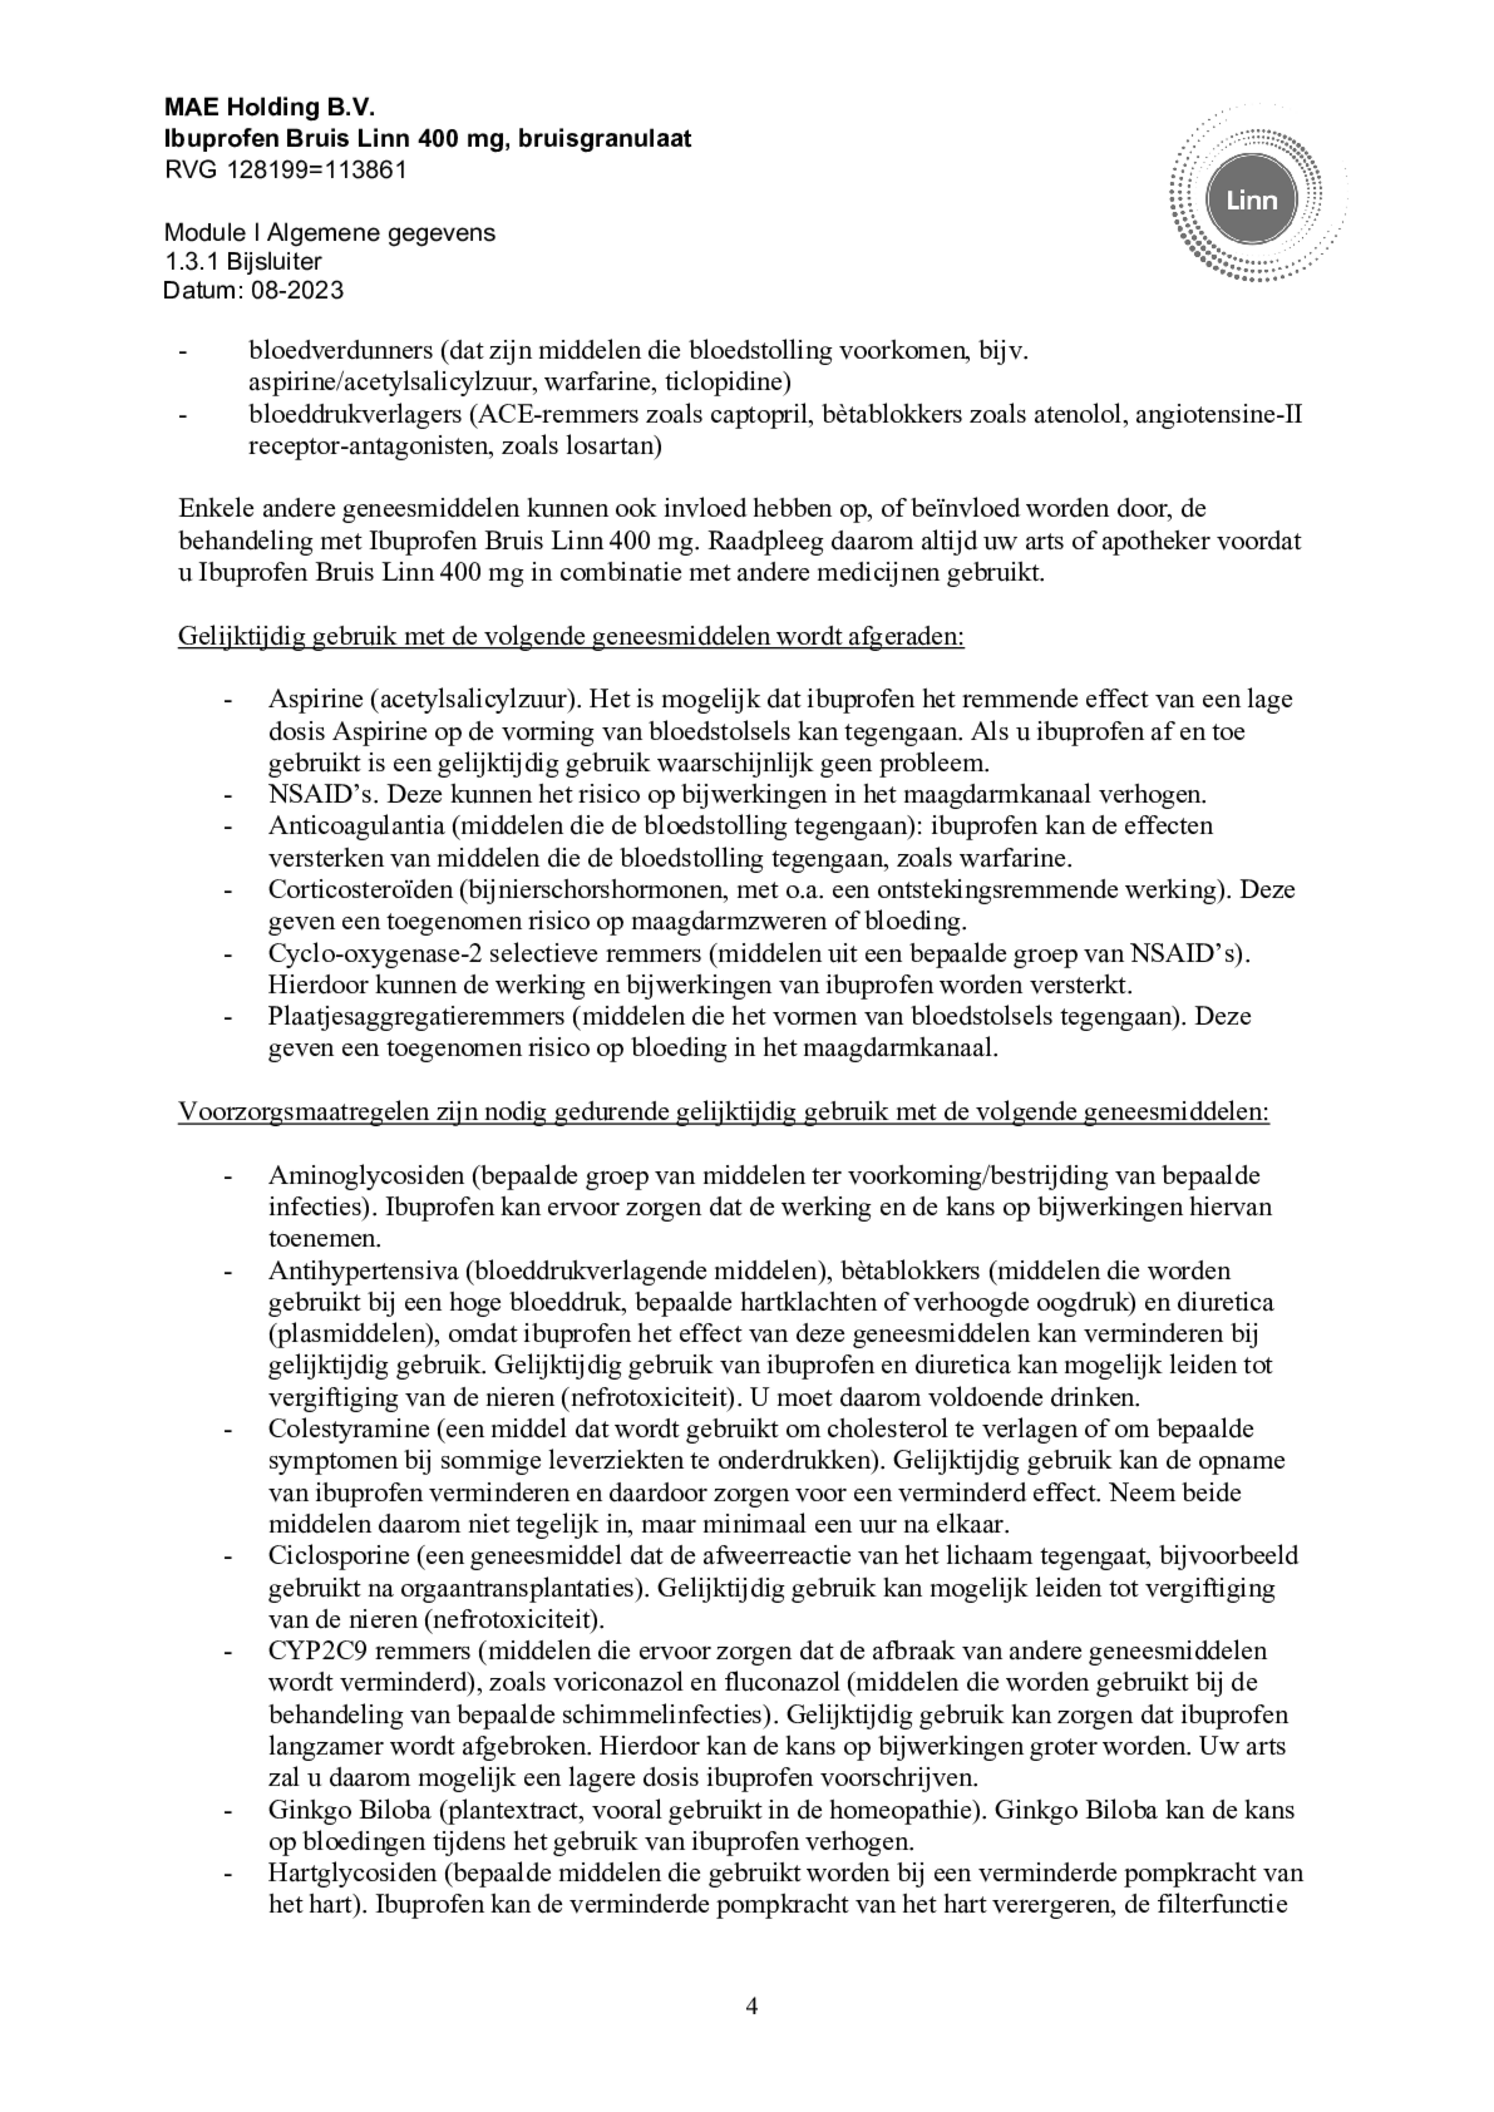 Ibuprofen Bruis Sachets 400mg afbeelding van document #4, bijsluiter